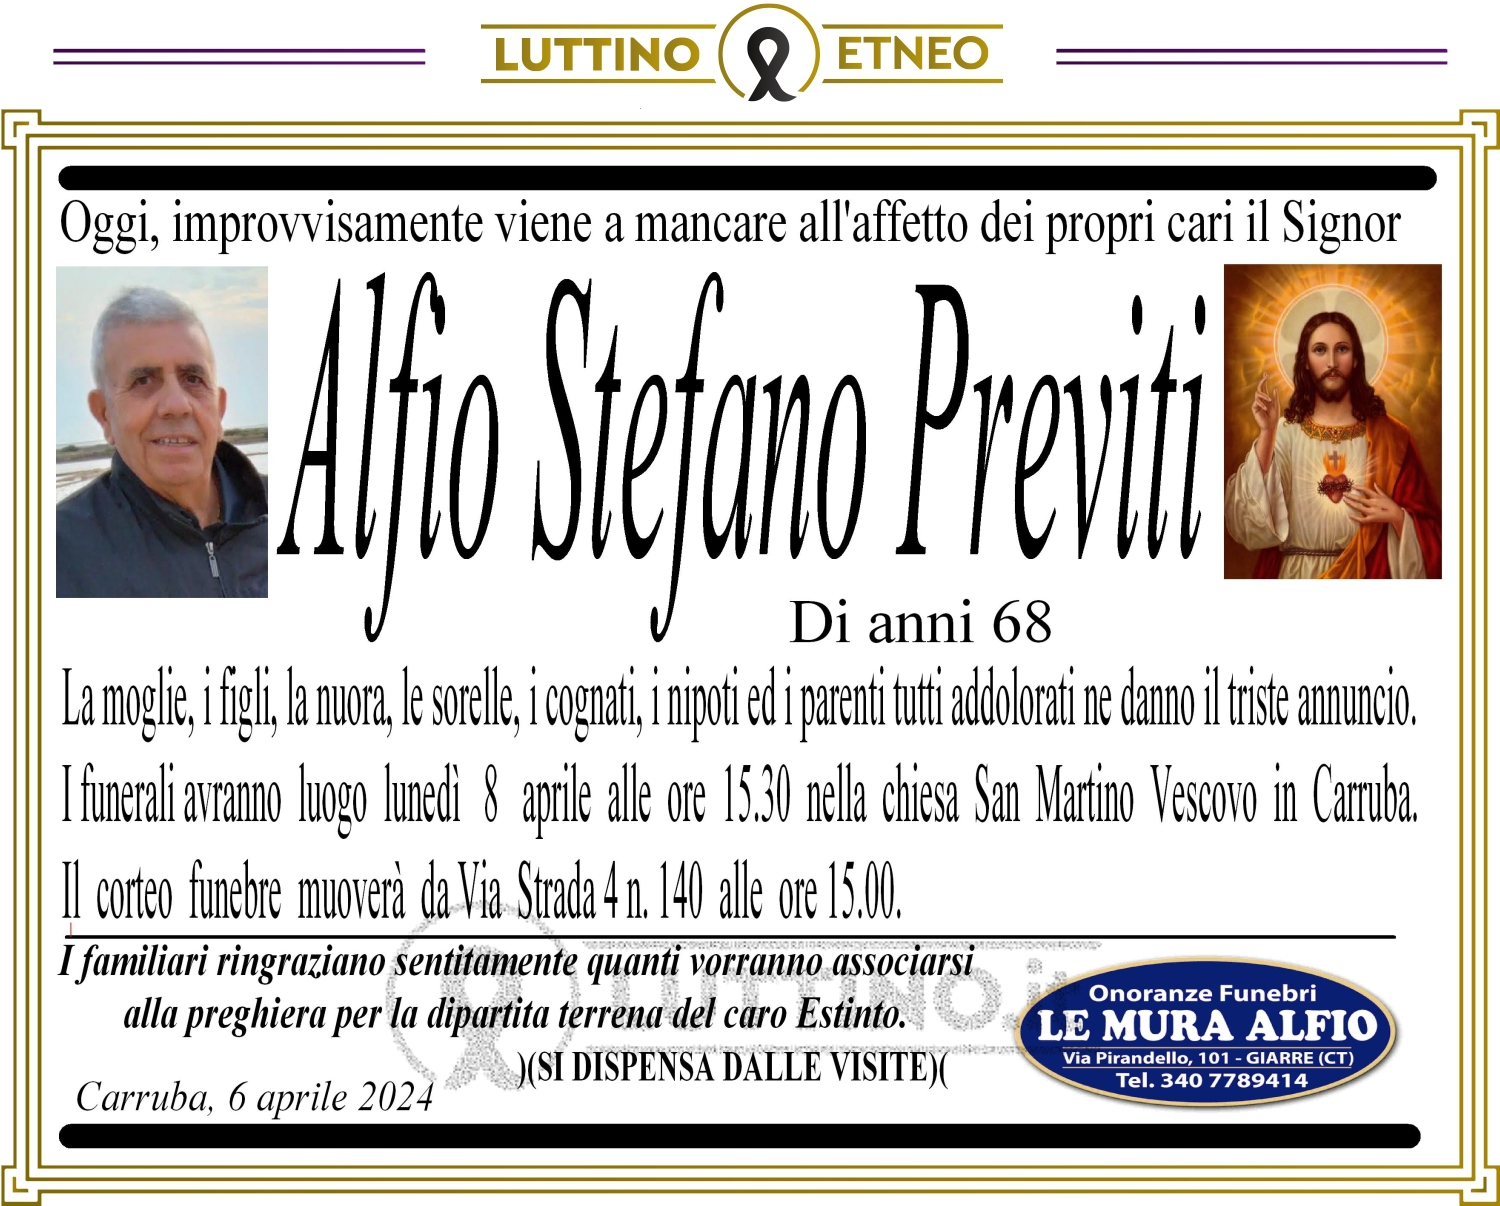 Alfio Stefano Previti